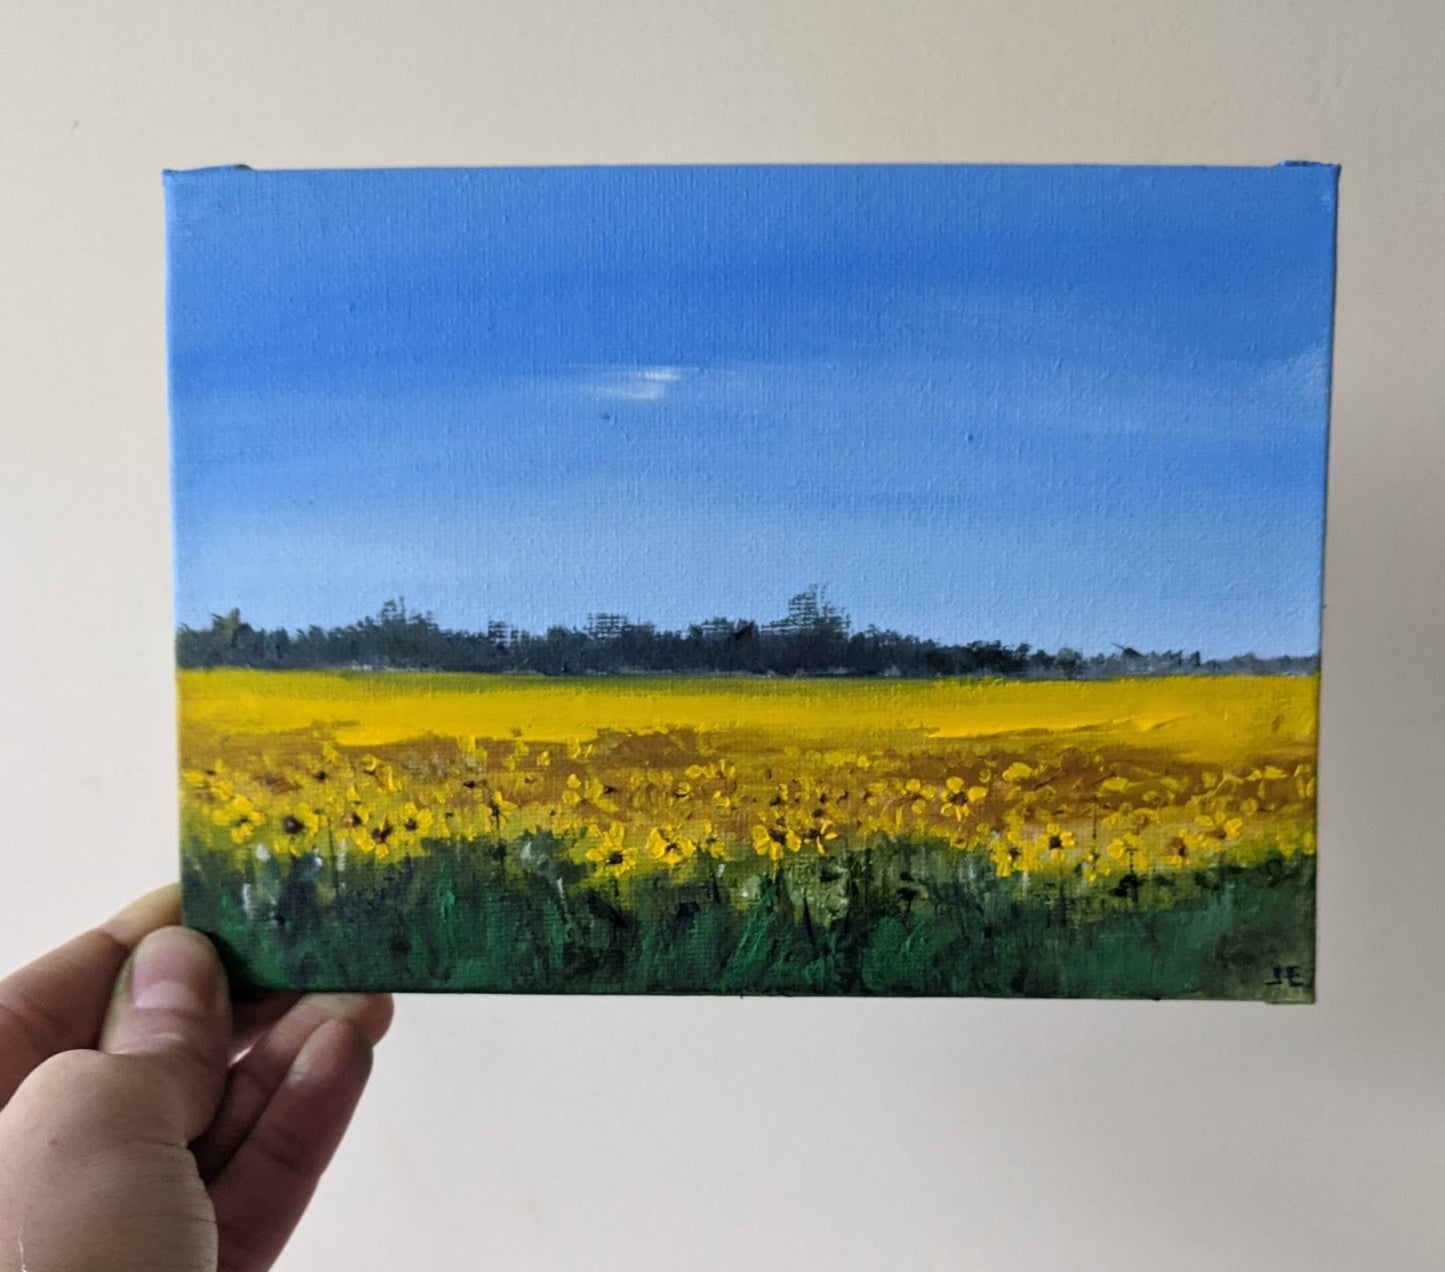 Miniature Sunflowers Landscape oil painting on canvas board in studio, by Jo Earl